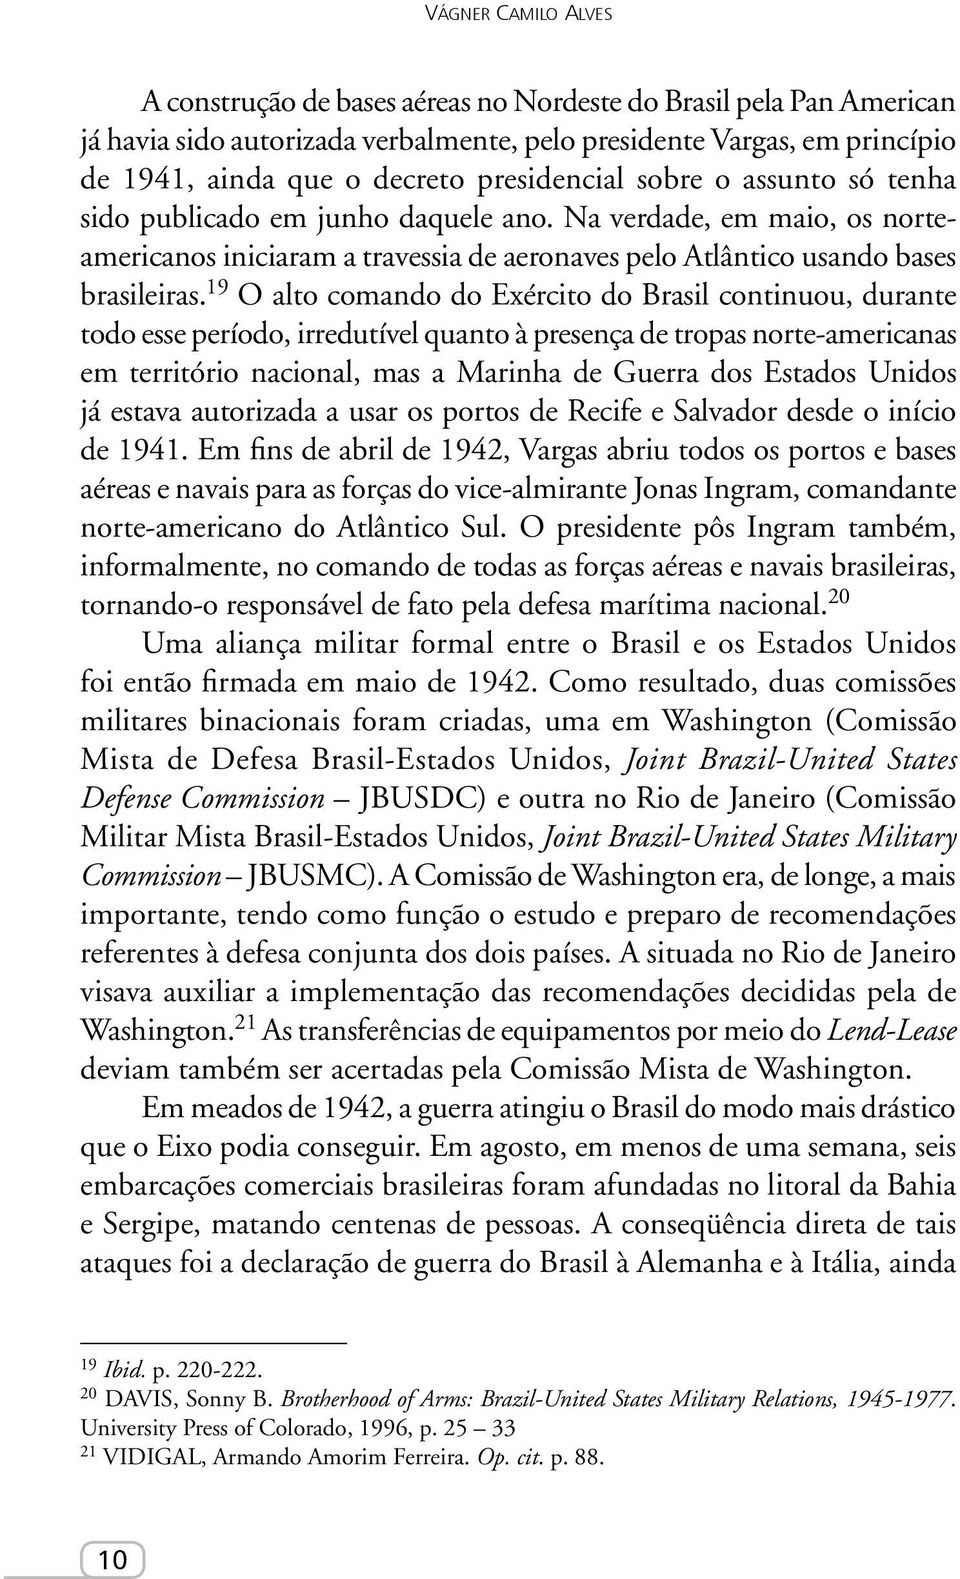 19 O alto comando do Exército do Brasil continuou, durante todo esse período, irredutível quanto à presença de tropas norte-americanas em território nacional, mas a Marinha de Guerra dos Estados